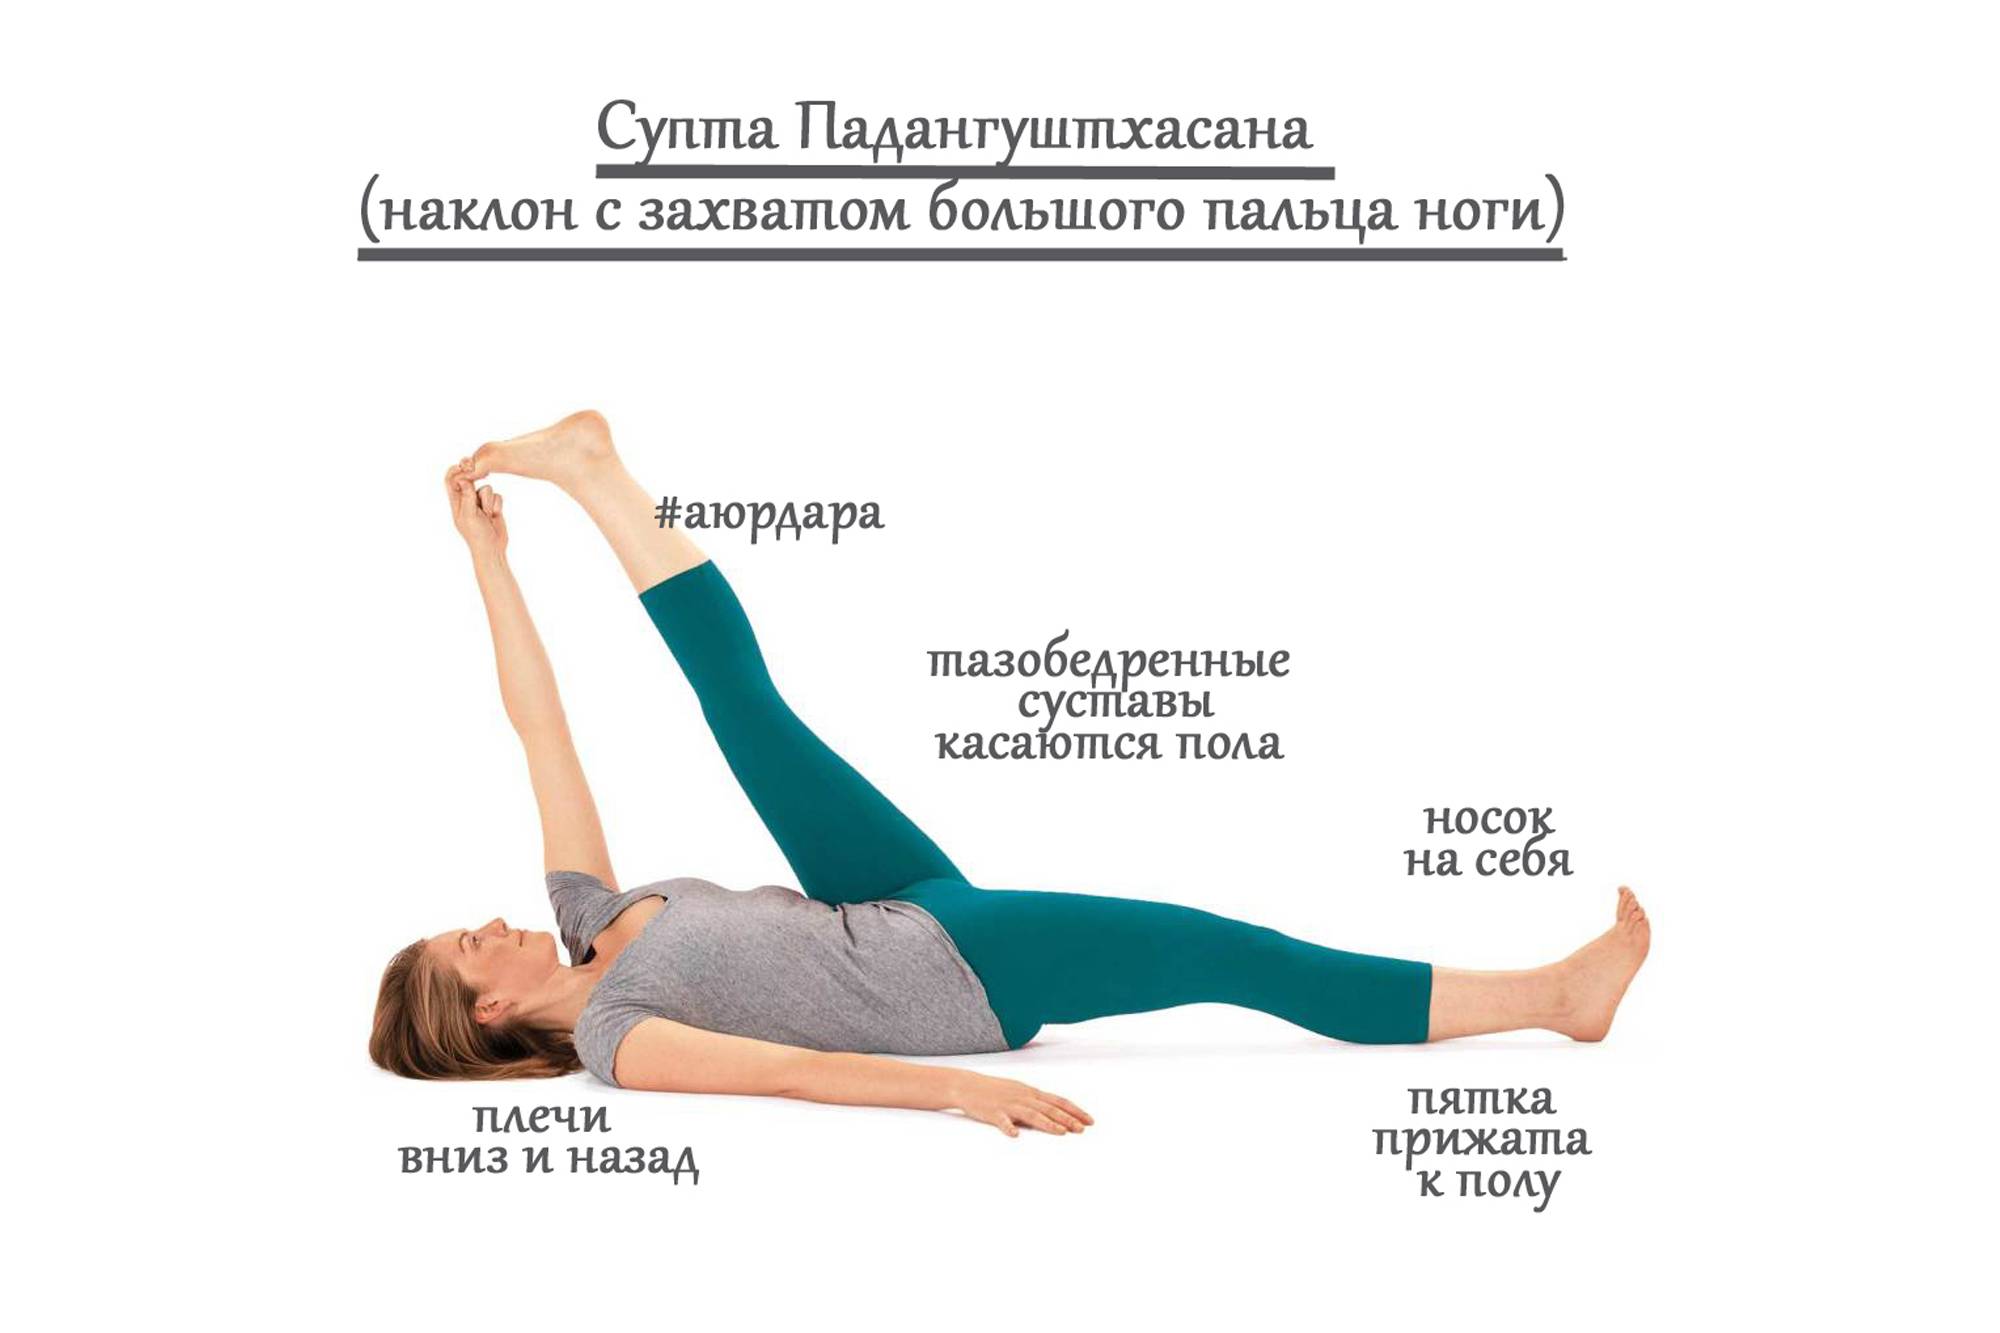 Трианг мукха эка пада пашчимоттанасана или наклон трех конечностей к вытянутой ноге в йоге: техника выполнения, польза, противопоказания